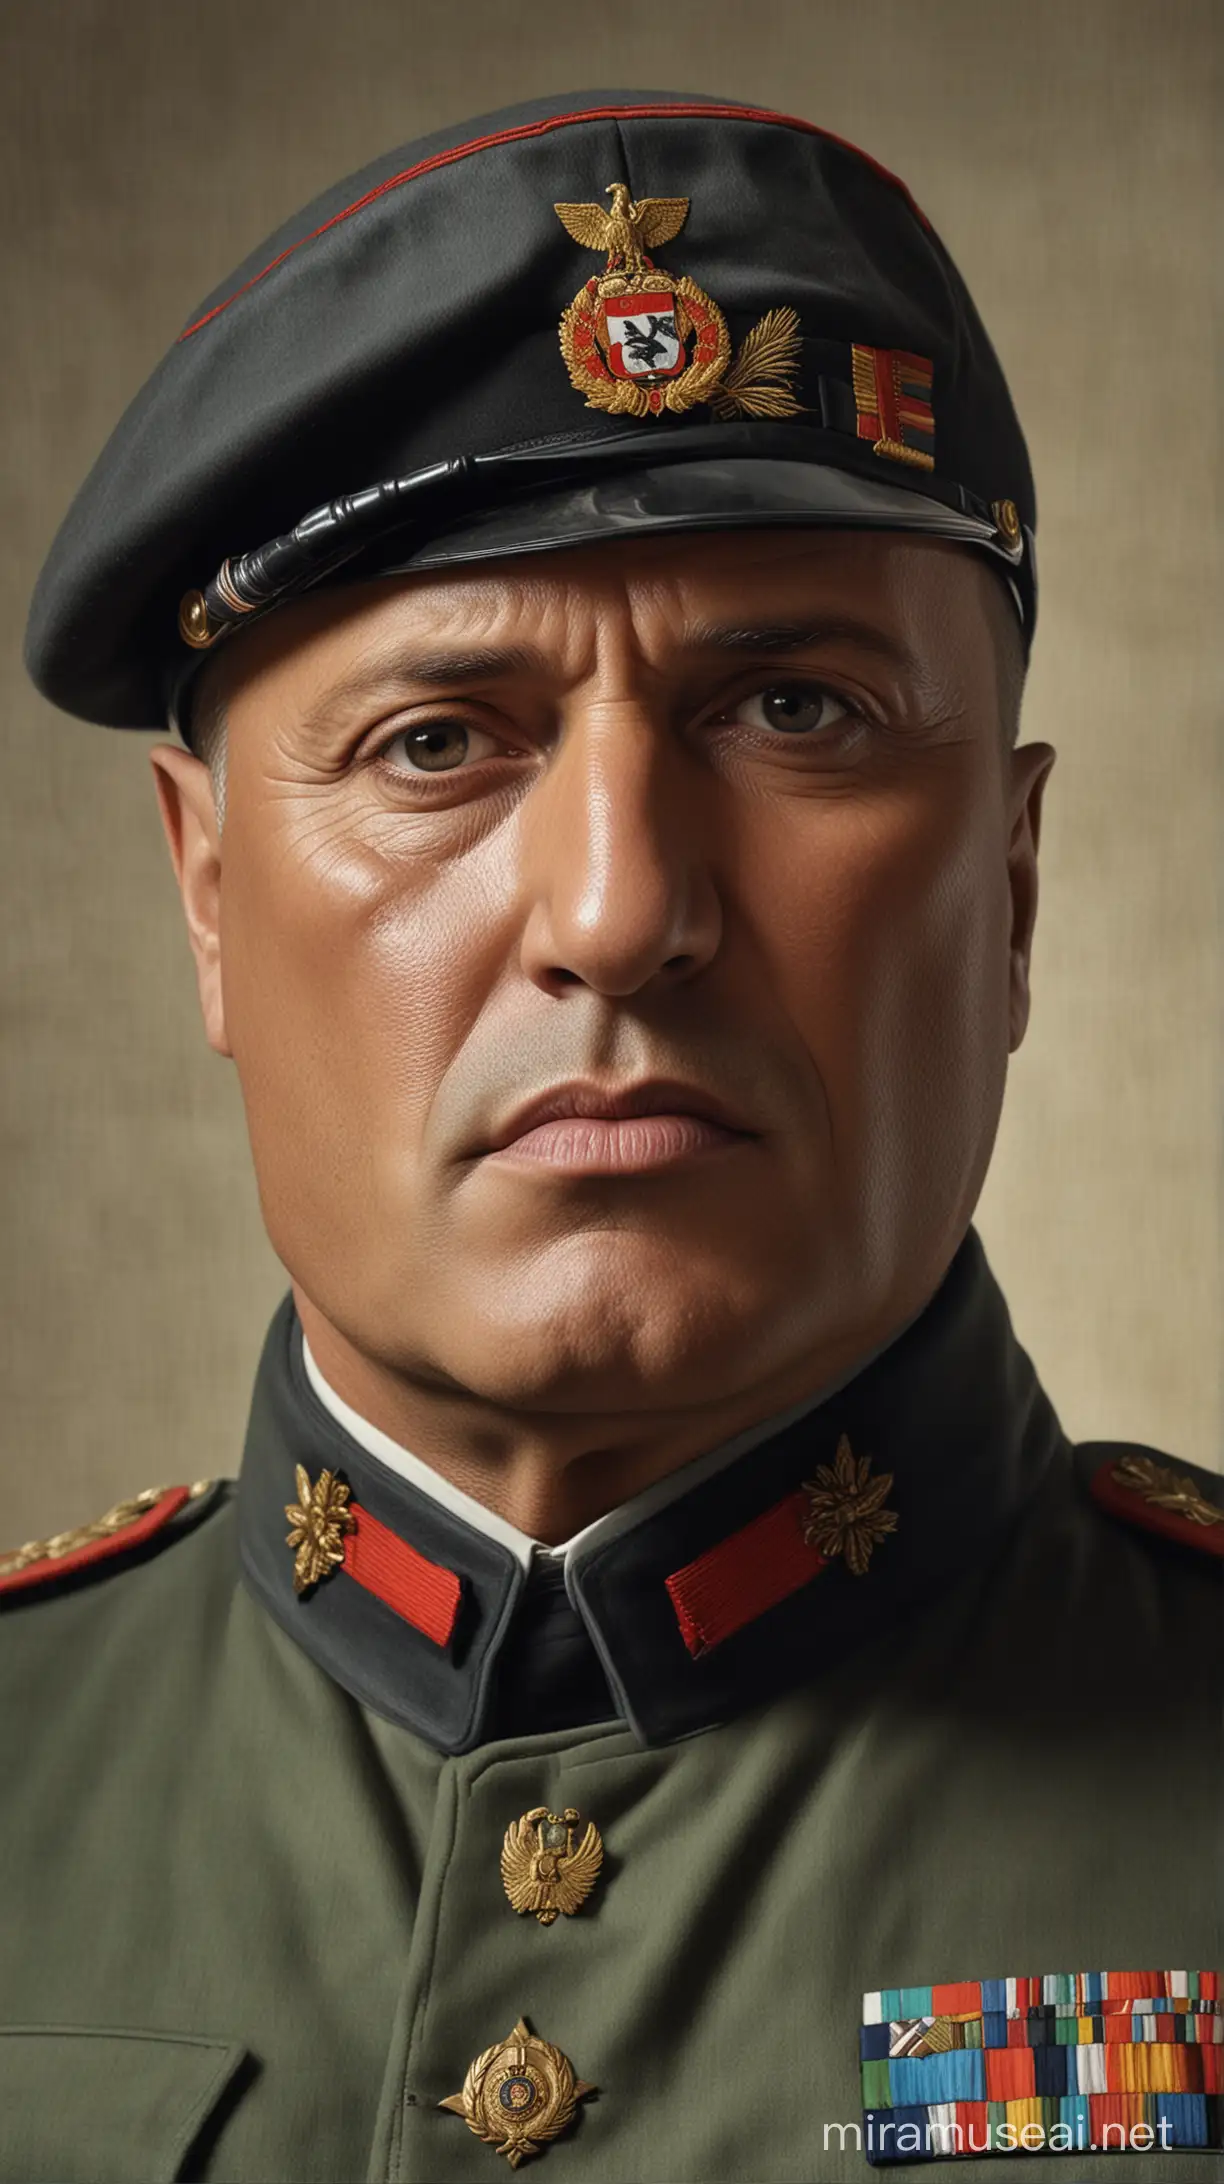 Hyper Realistic Portrait of Benito Mussolini in Vivid Colors